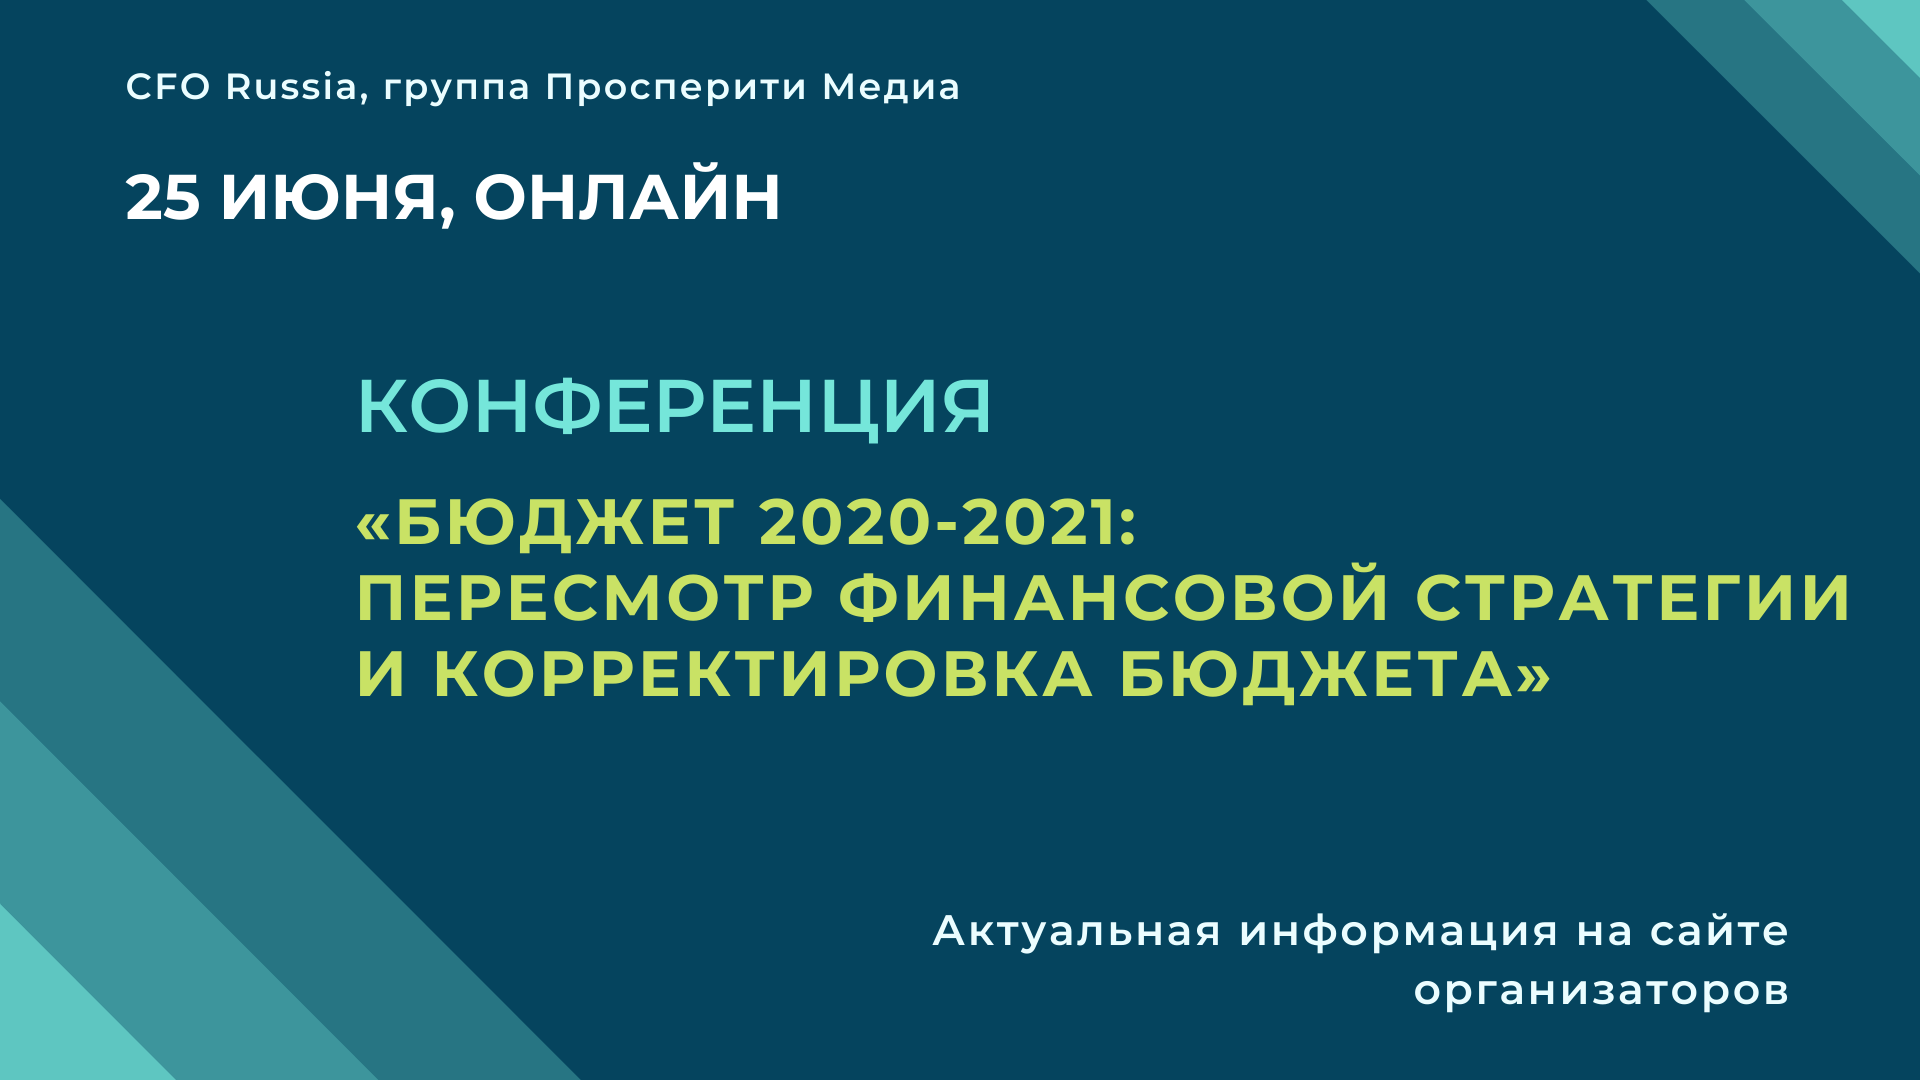 Конференция «Бюджет 2020-2021: пересмотр финансовой стратегии и корректировка бюджета»